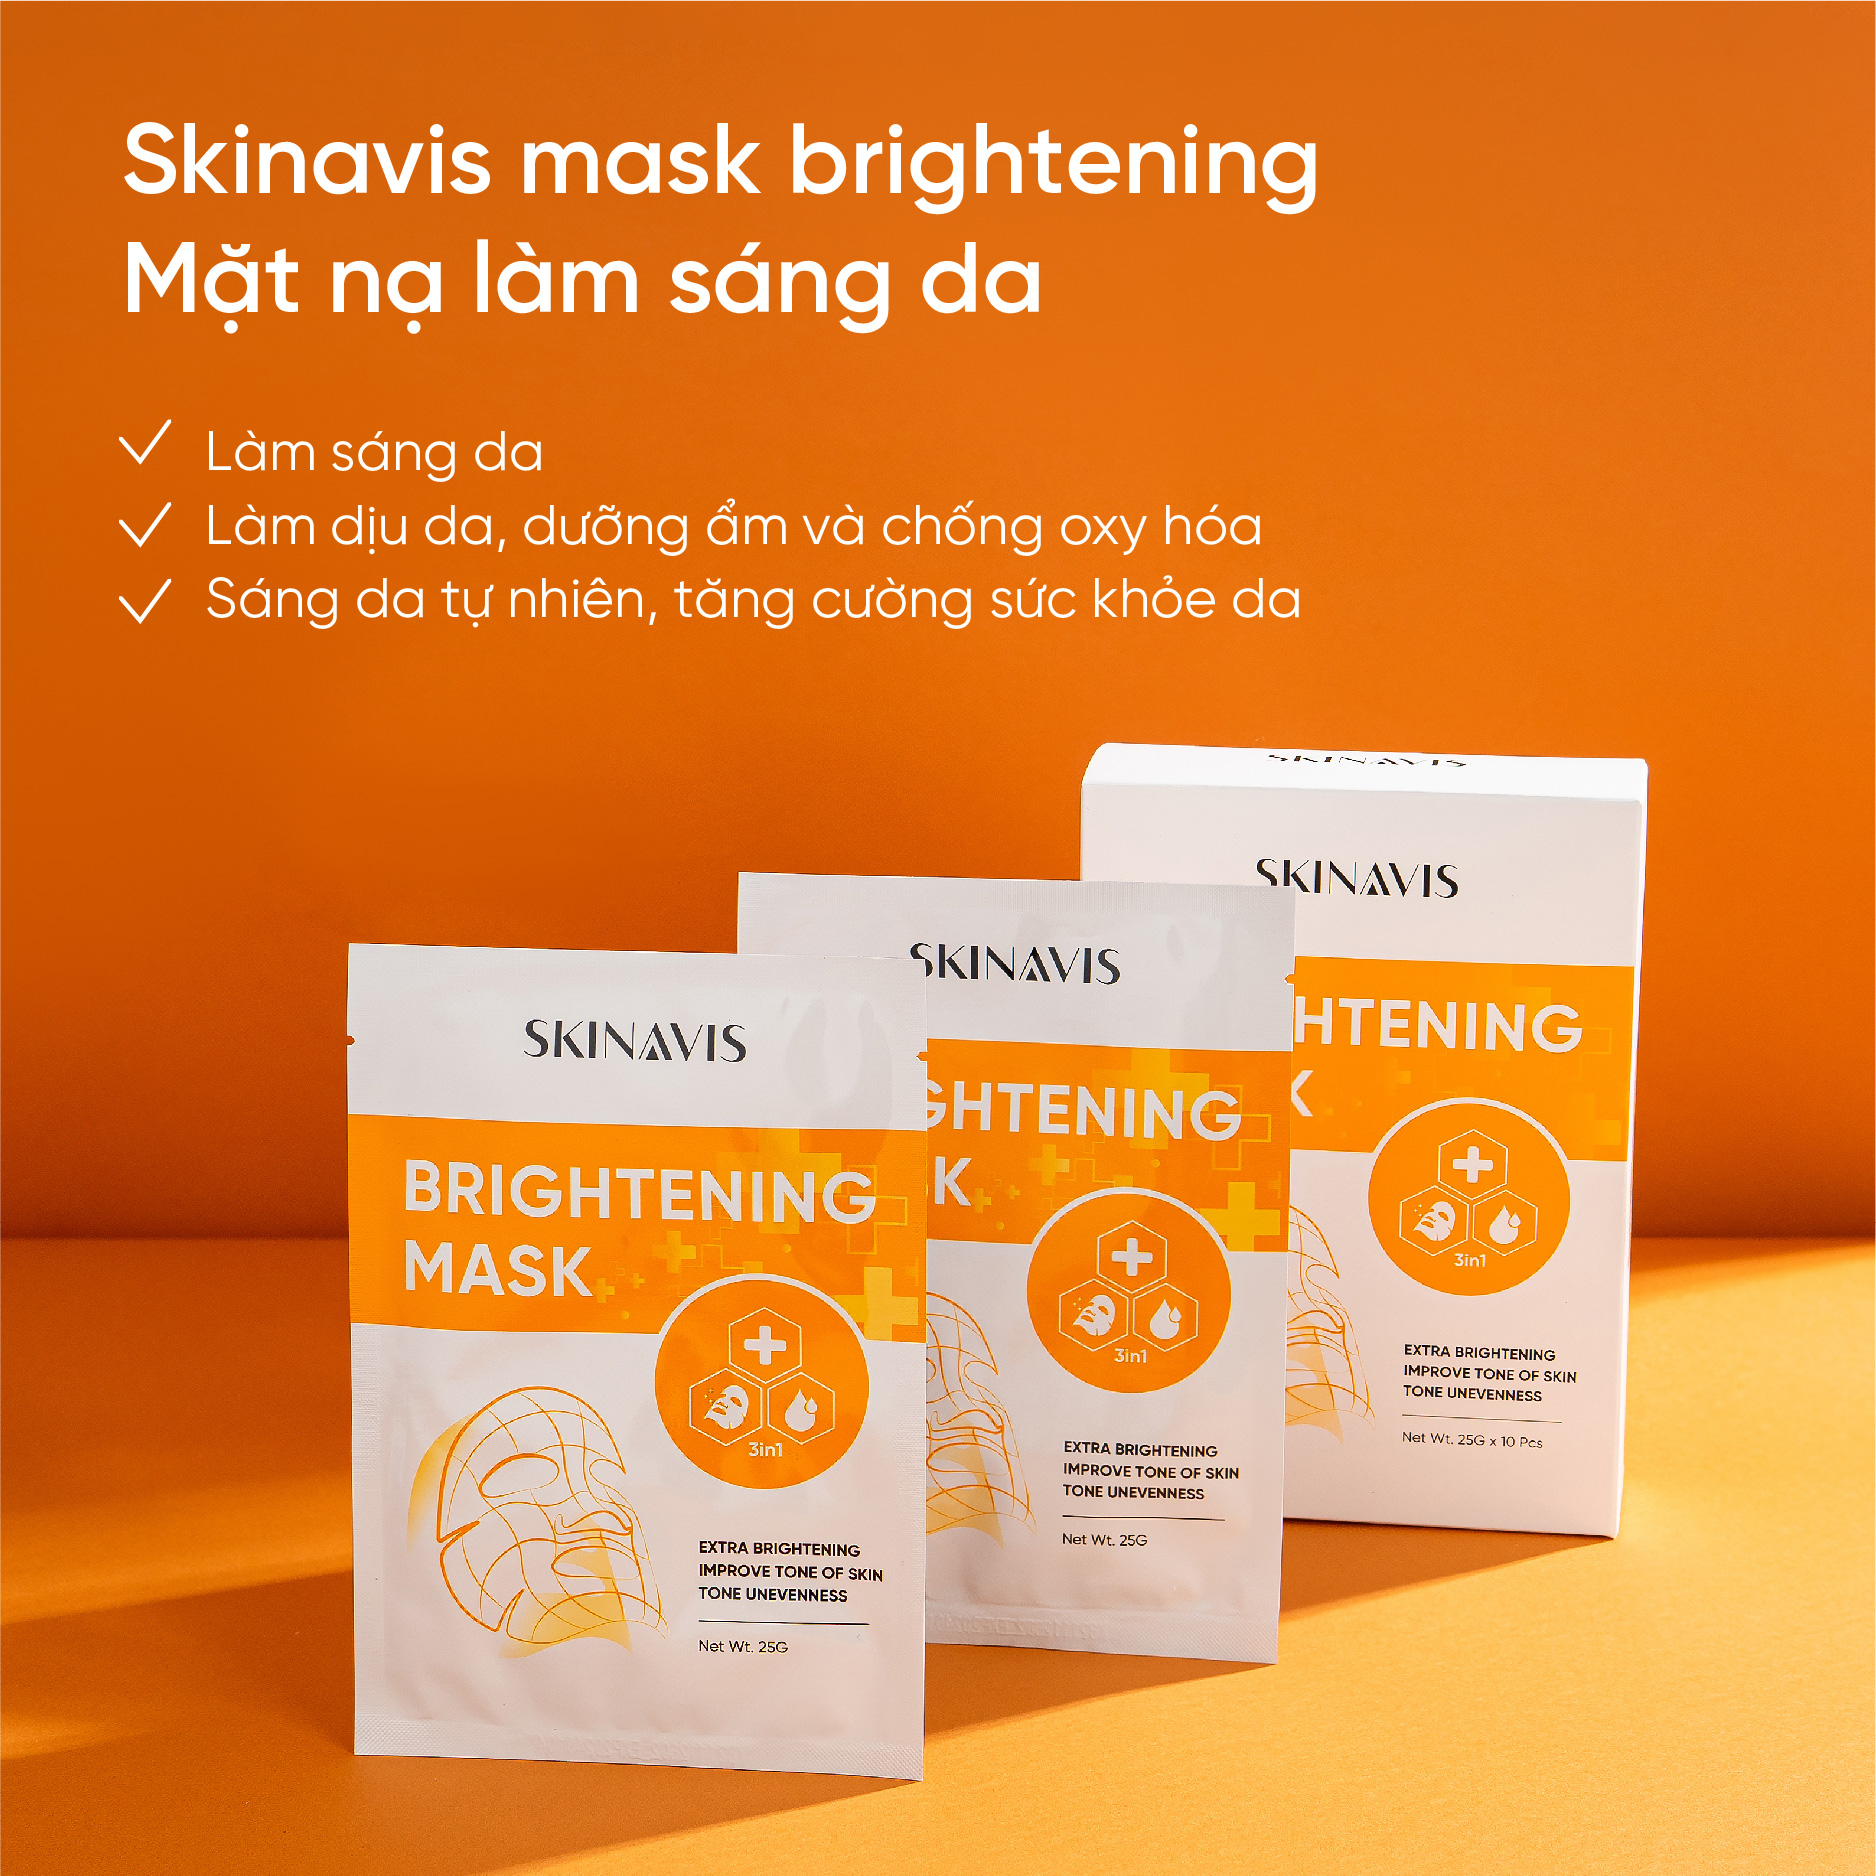 Skinavis Mask Brightening - Dòng mặt nạ phục hồi da, làm sáng, mờ thâm